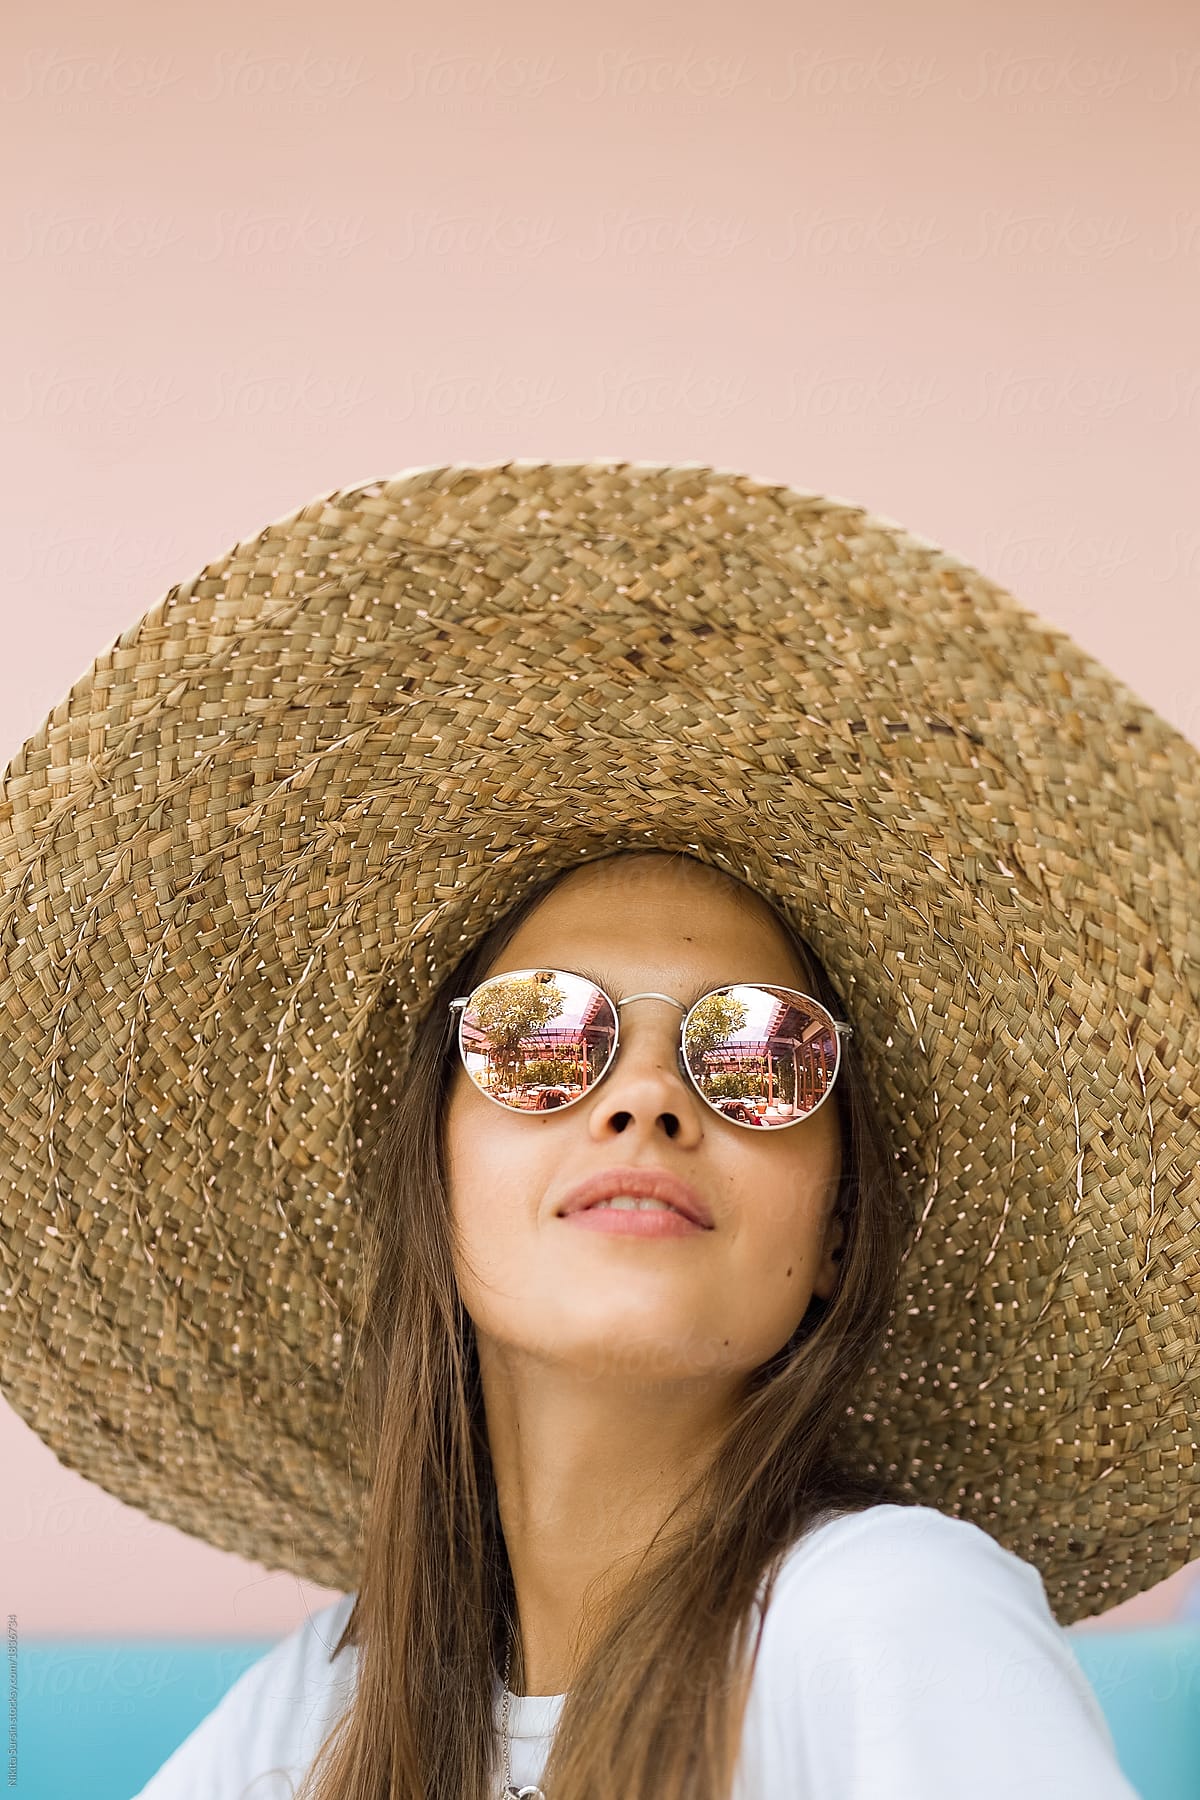 El Ranchero Summer Hat Unisex Summer Hats, Sun Hats For, 42% OFF